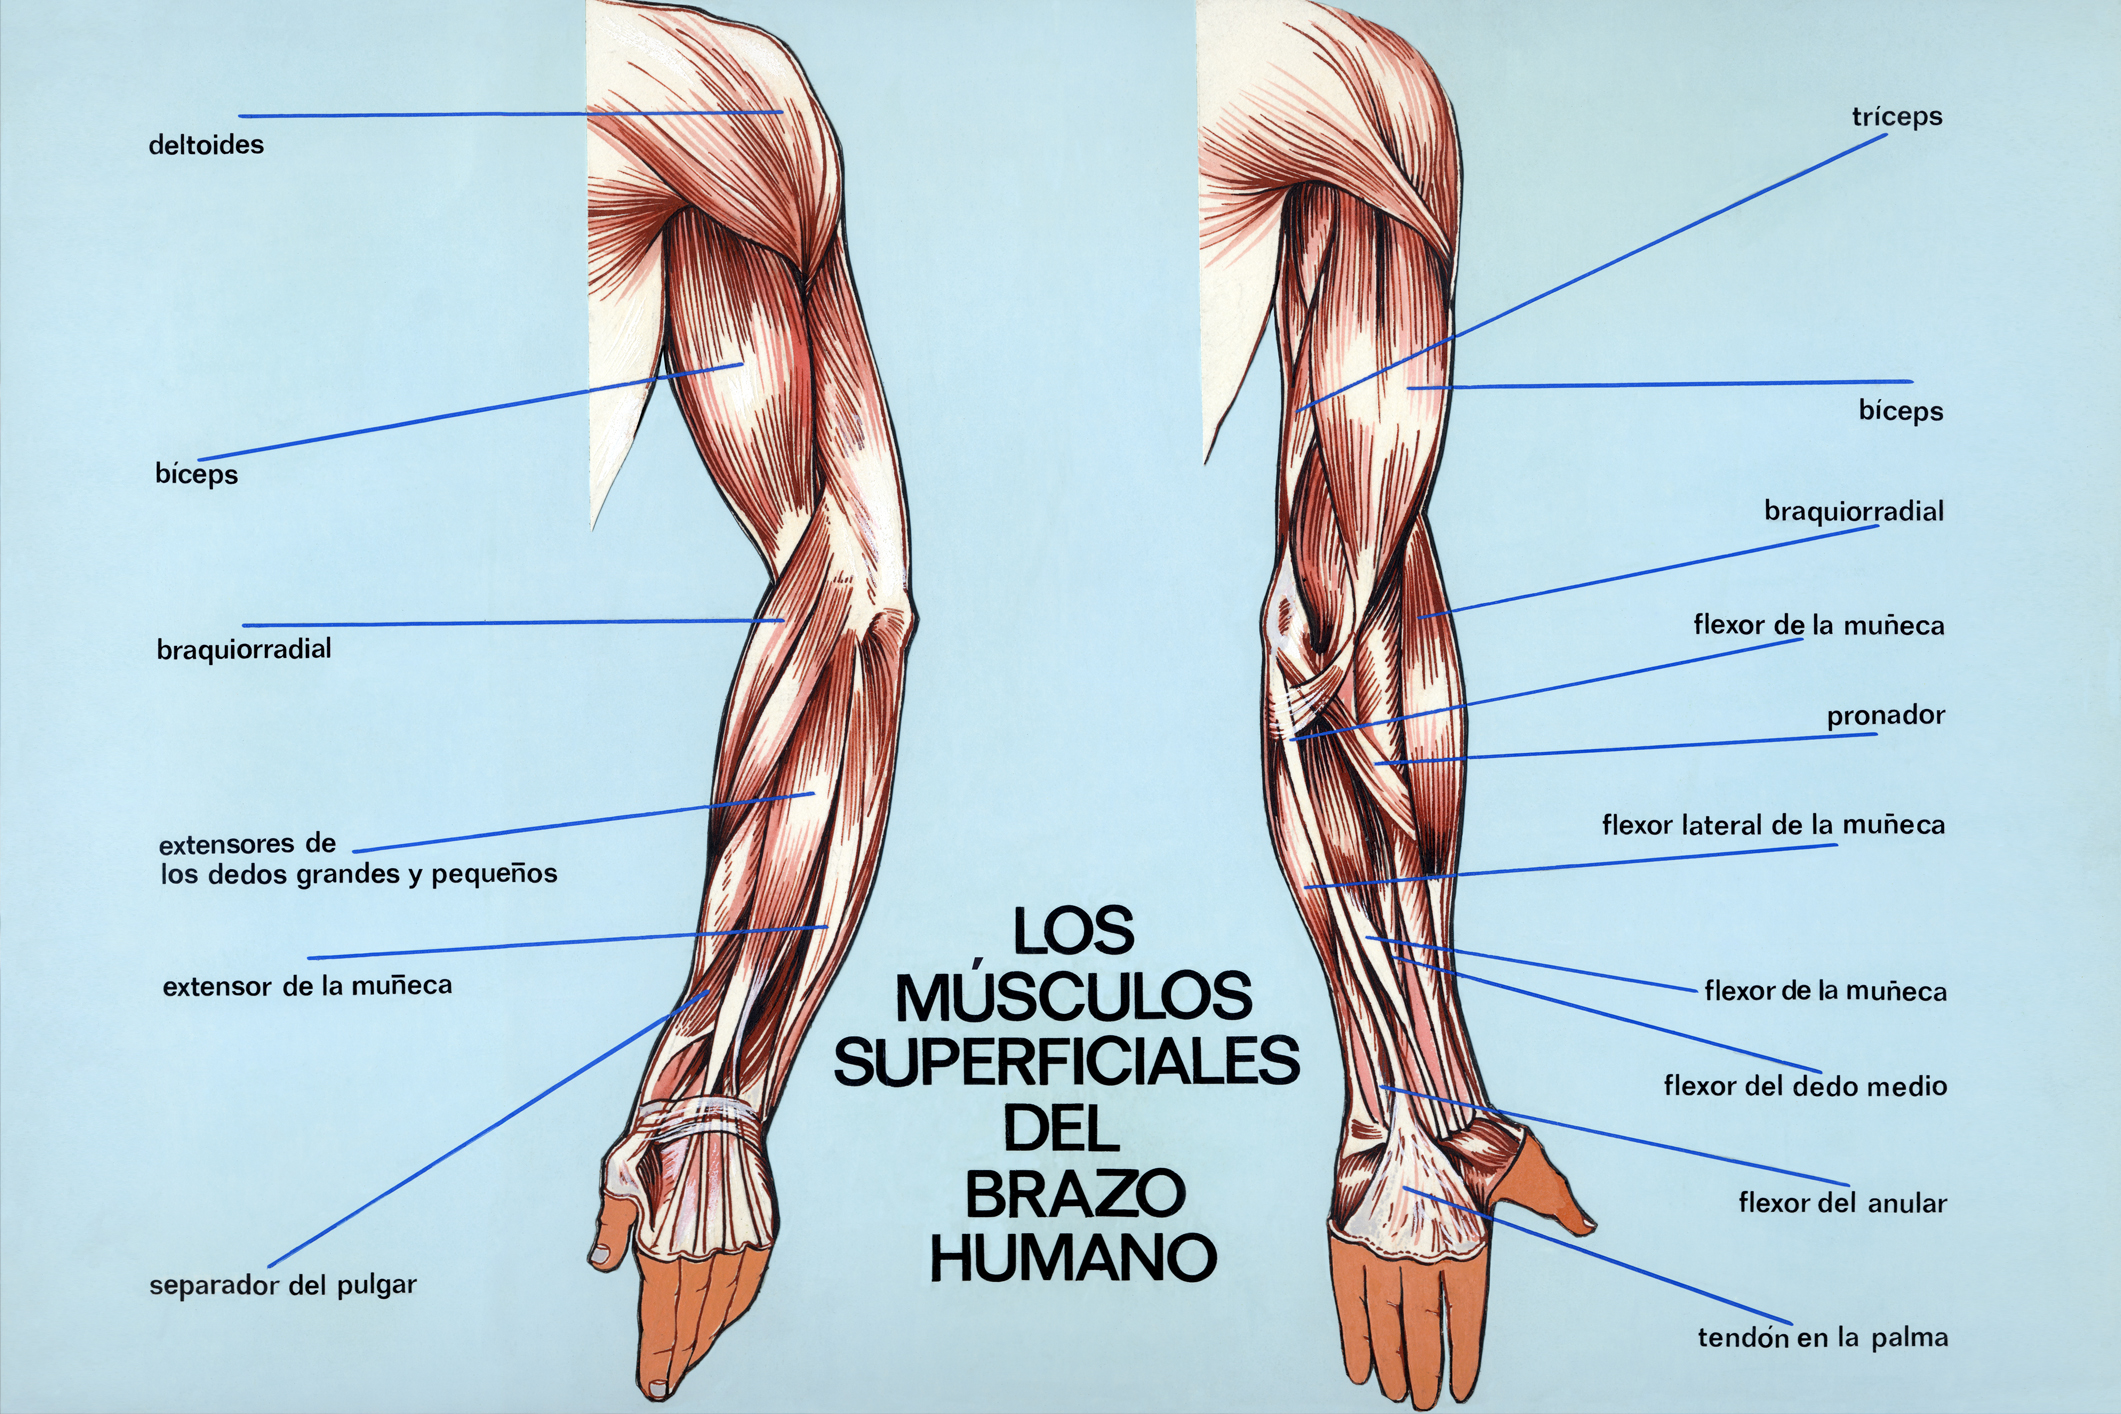 Músculos superficiales del brazo humano